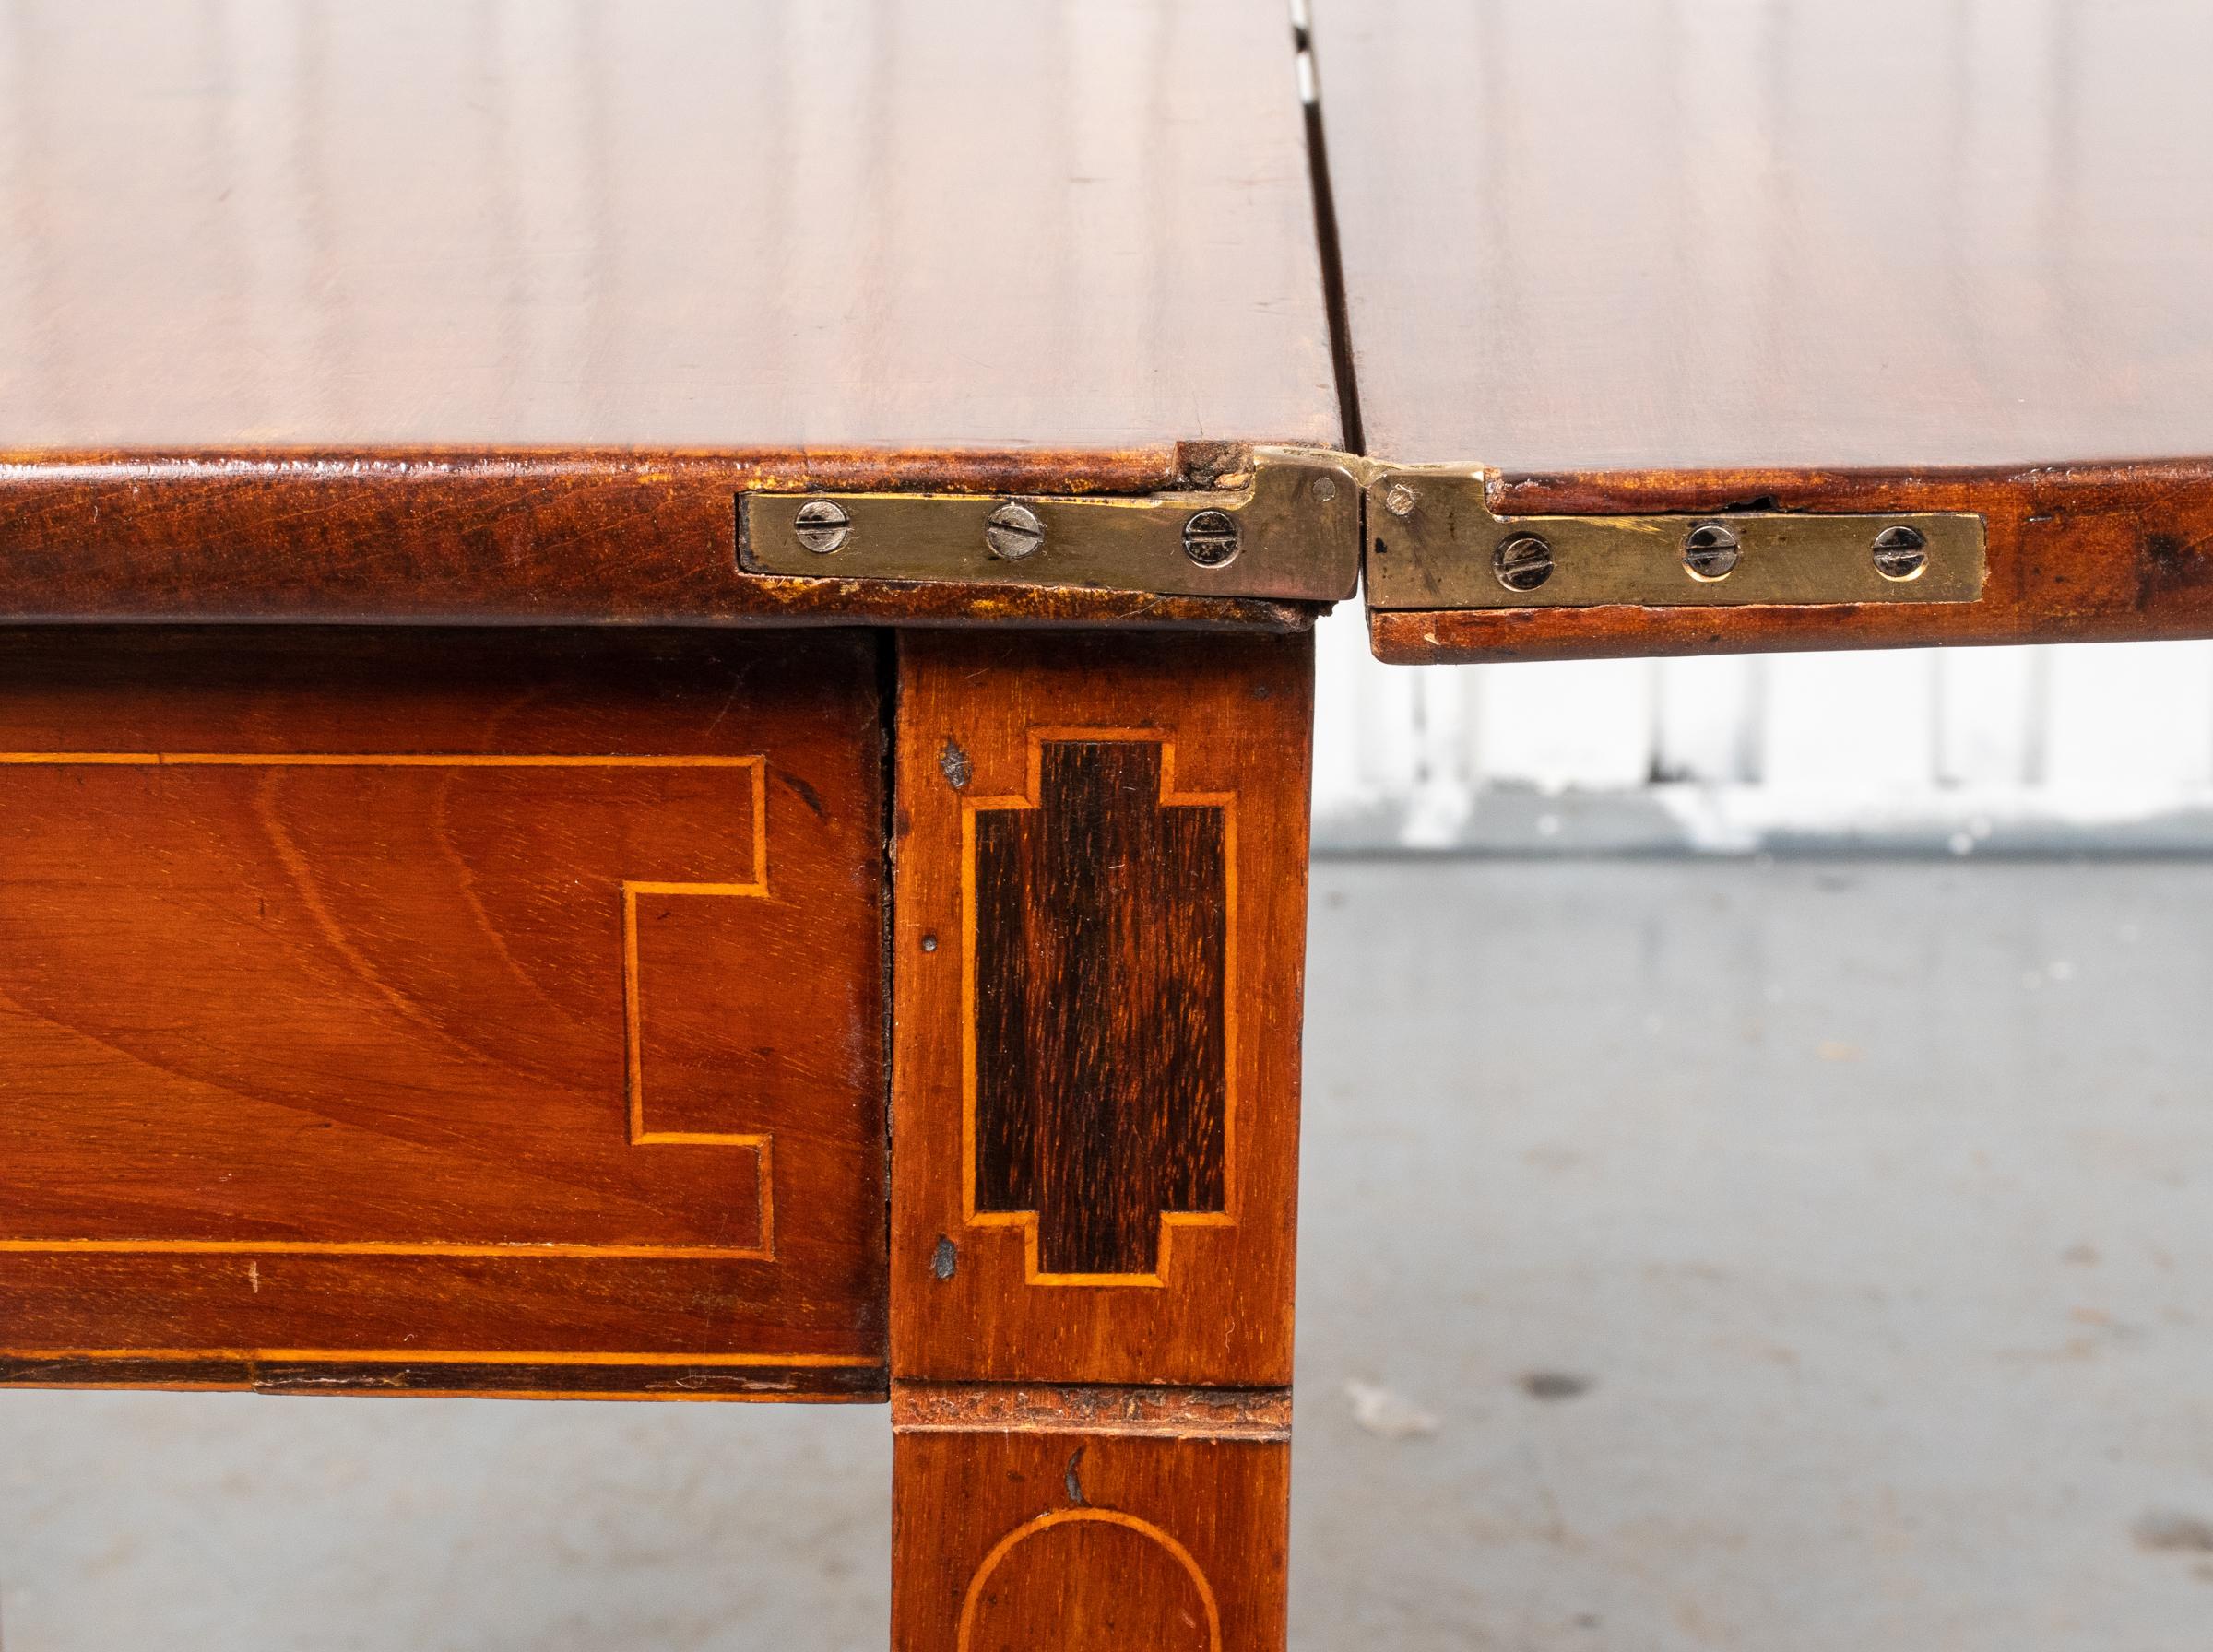 Georges III. Mahagoni-Tisch mit Intarsien, spätes 18. Jh., Klappplatte über der Schürze mit geometrischer Intarsienarbeit, hinten mit Torbeinen. In sehr gutem Vintage-Zustand. 

Händler: S138XX